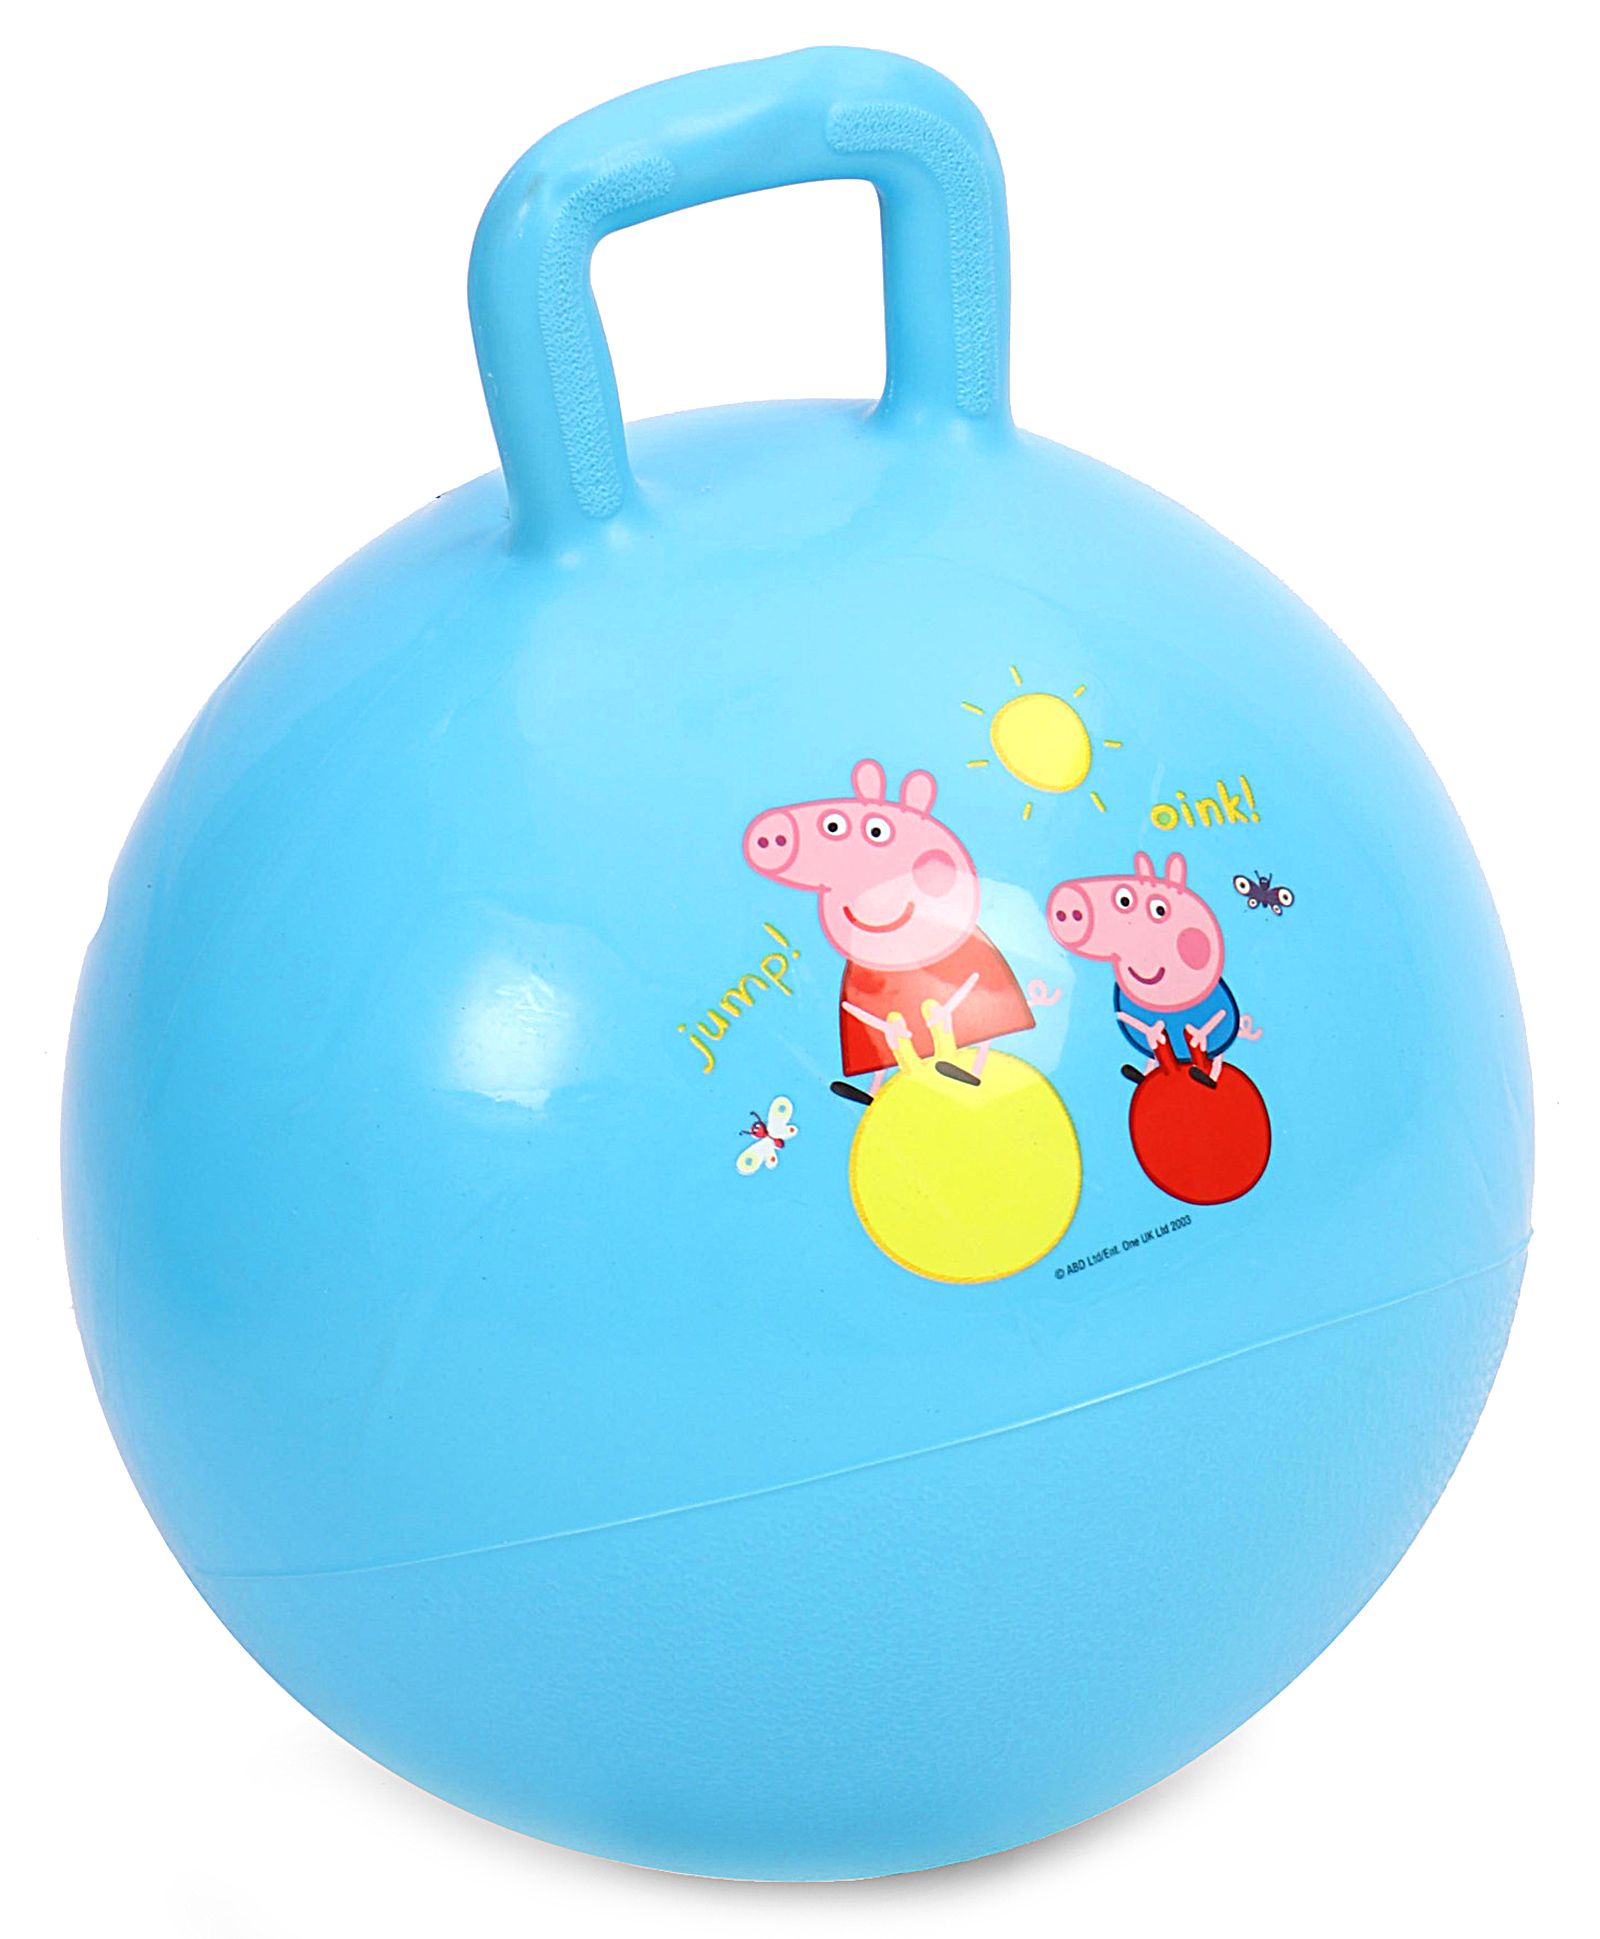 Peppa Pig Hopper Ball - Blue Online 